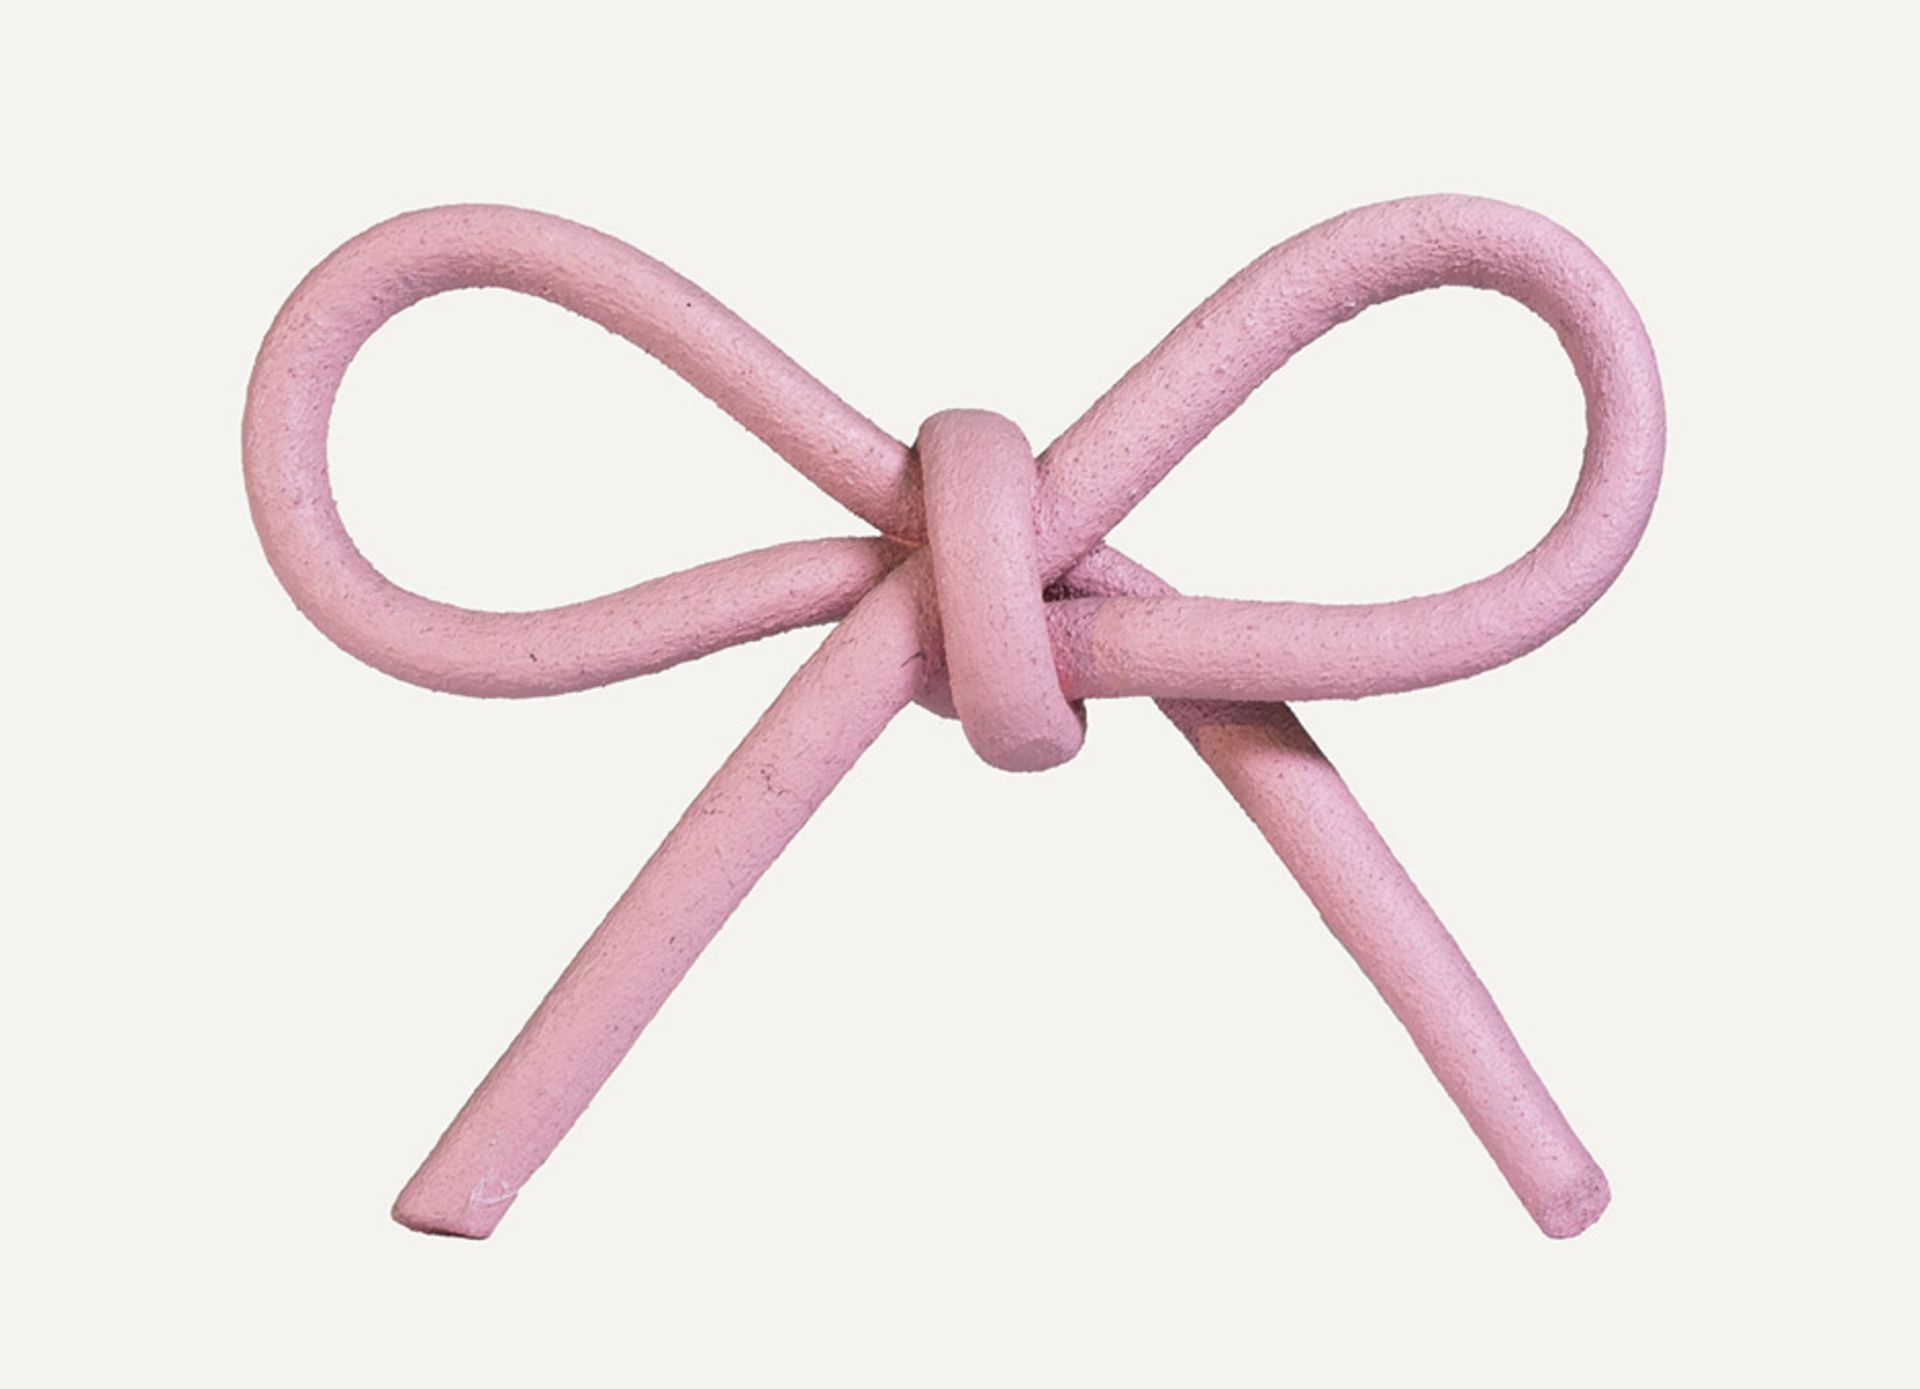 Paeffgen, C. O.: SchleifeSchleifeObjekt. Seil, zur Schleife gebunden und in rosa Farbe getaucht, mit